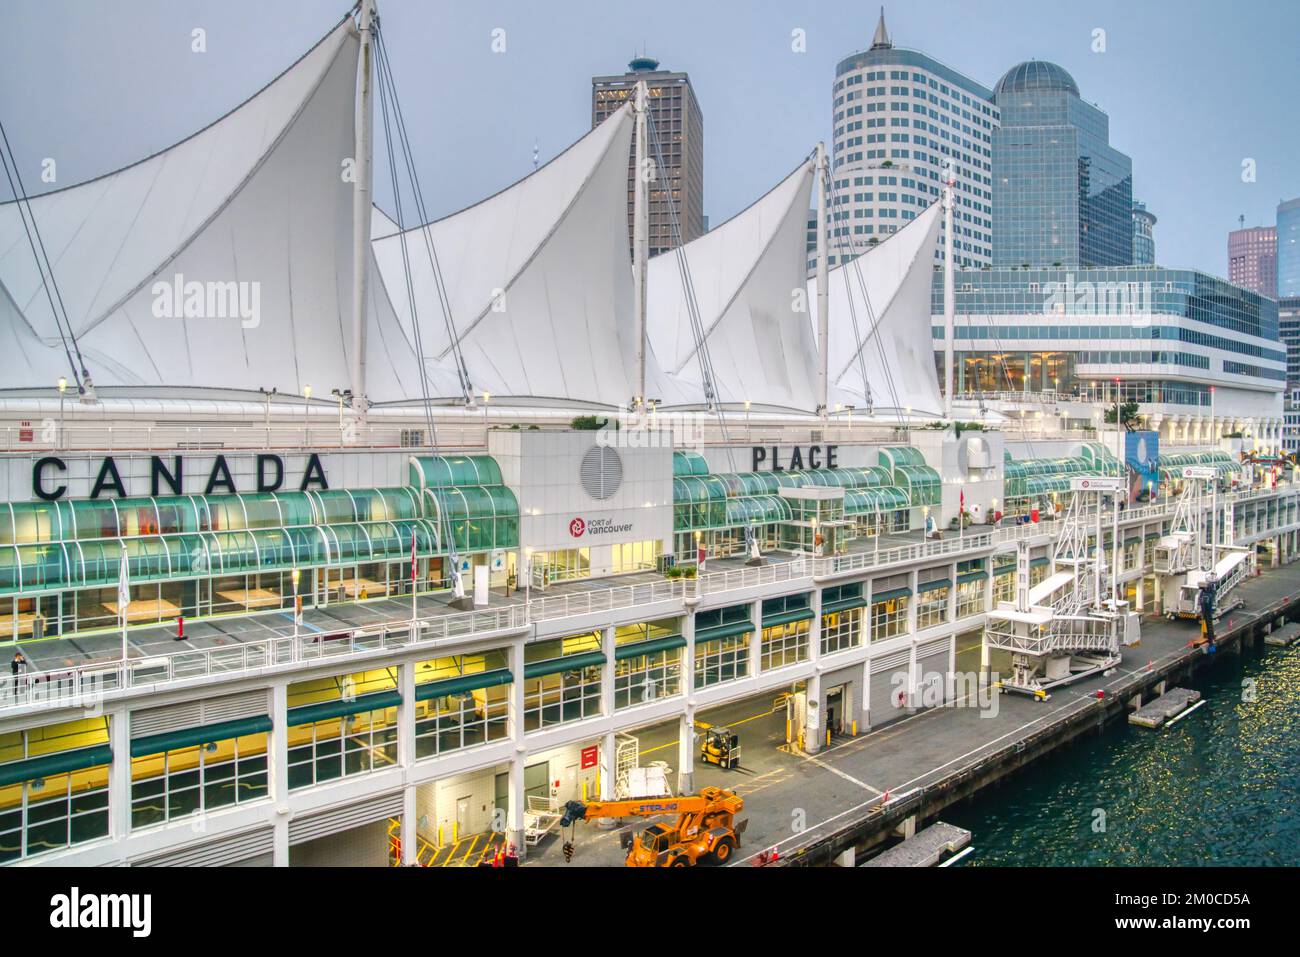 Vancouver, Canada - 11 septembre 2022 : le terminal des navires de croisière de Canada place est le principal port de croisière de Vancouver pour les navires de croisière du Pacifique. Banque D'Images